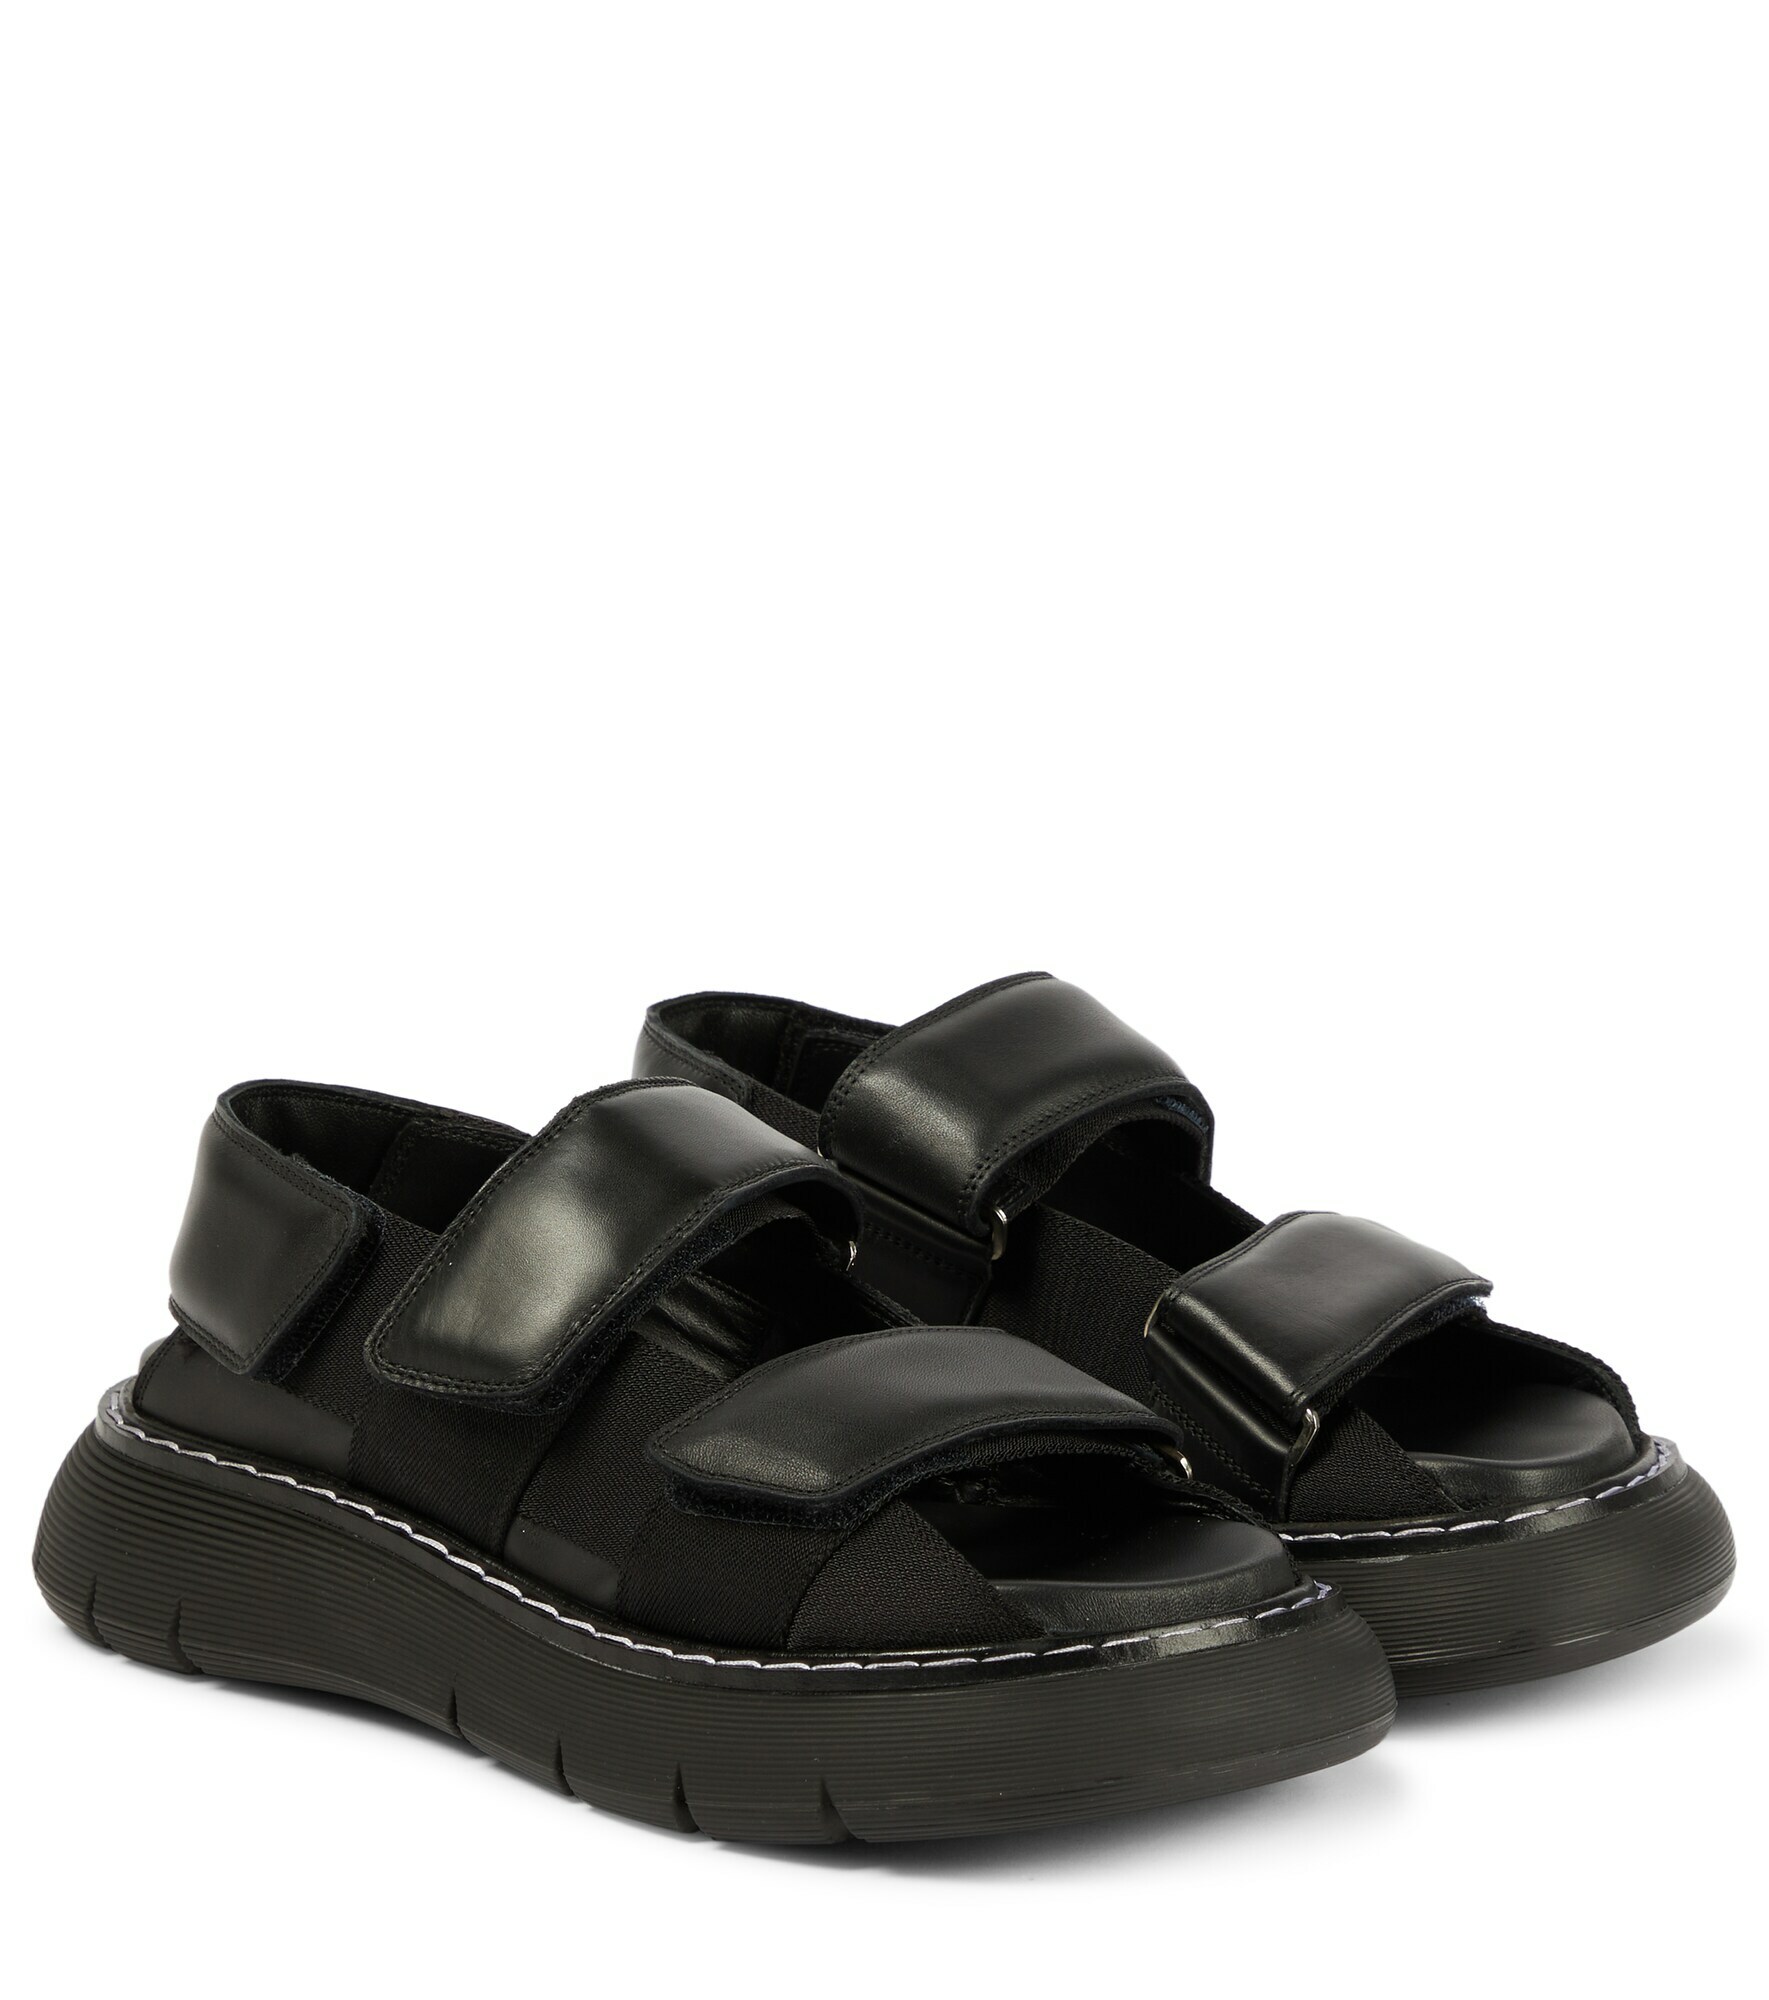 Khaite - Murray leather sandals Khaite